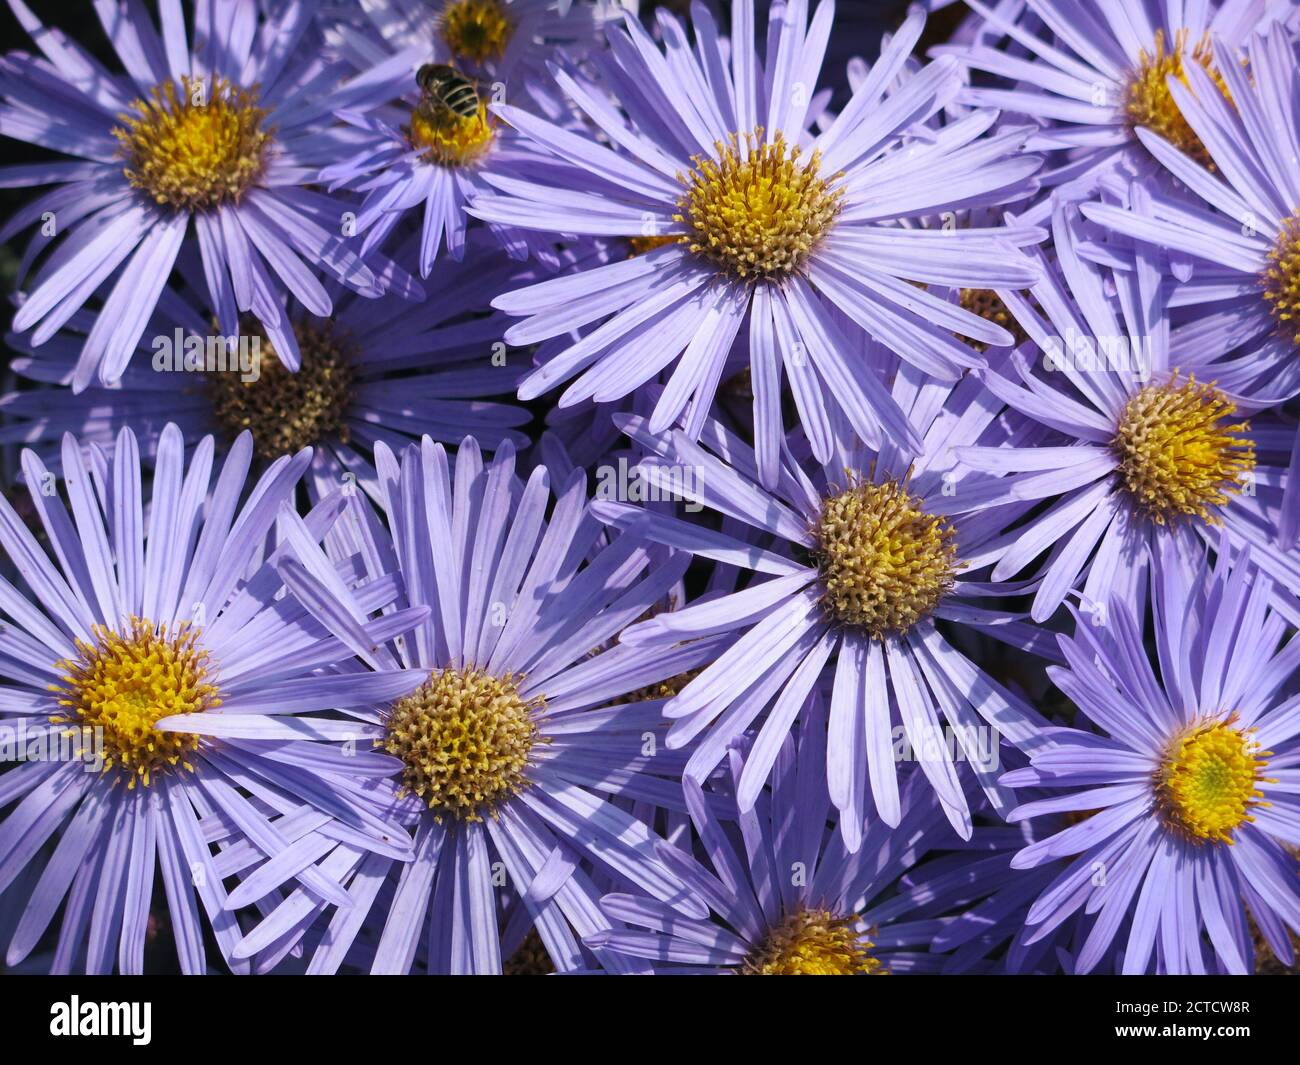 Nahaufnahme der massierten Blumenköpfe mit leuchtend blauen und gelben Gänseblümchen-ähnlichen Blumen von Aster Amellus 'King George', auch bekannt als Michaelmas Daisies. Stockfoto